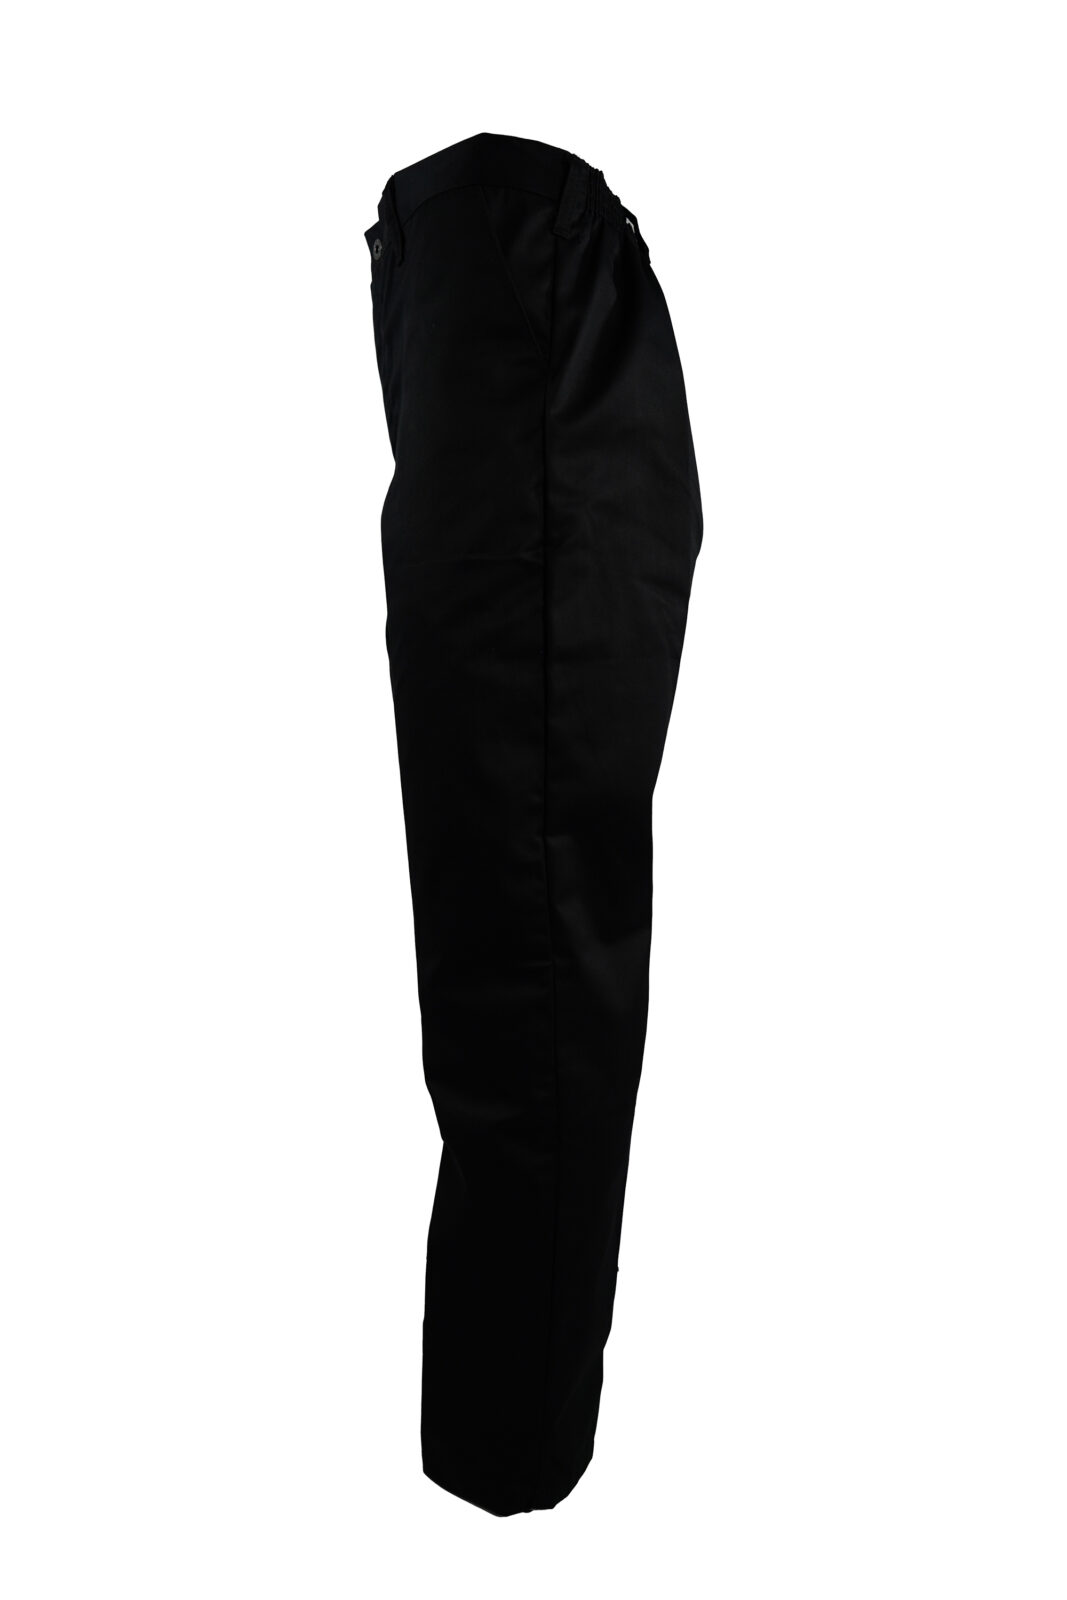 Titan Workwear Black Conti Trouser - Santon Workwear